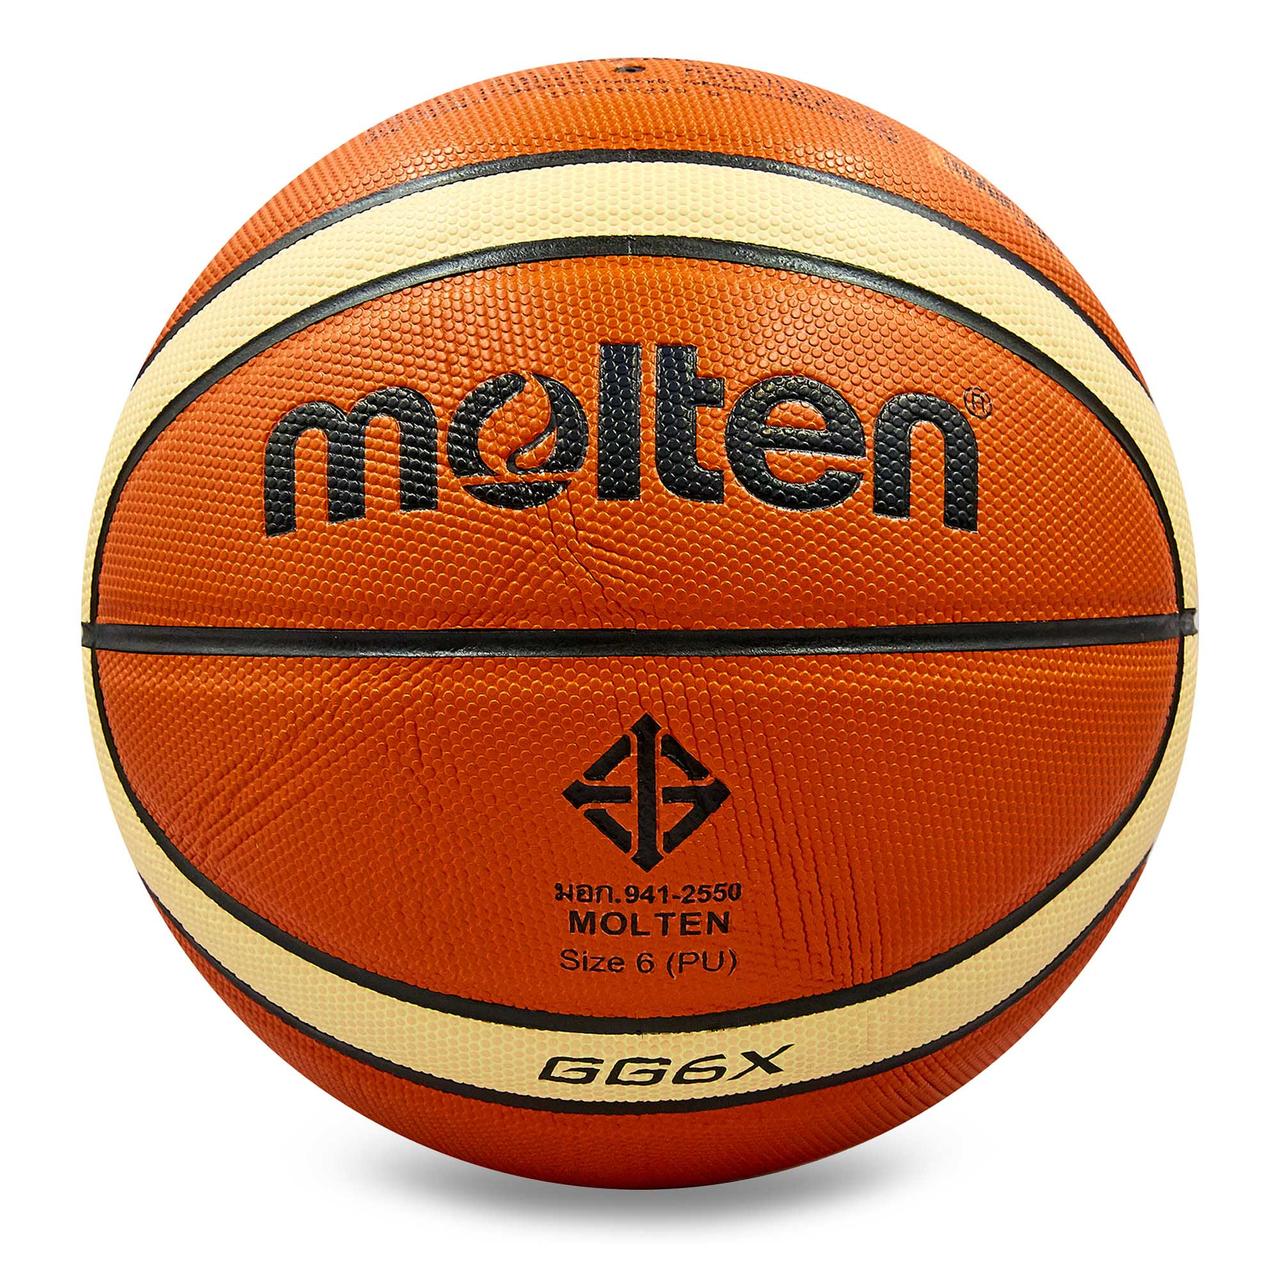 М'яч баскетбольний PU No6 MOLTEN BGG6X z12-2024